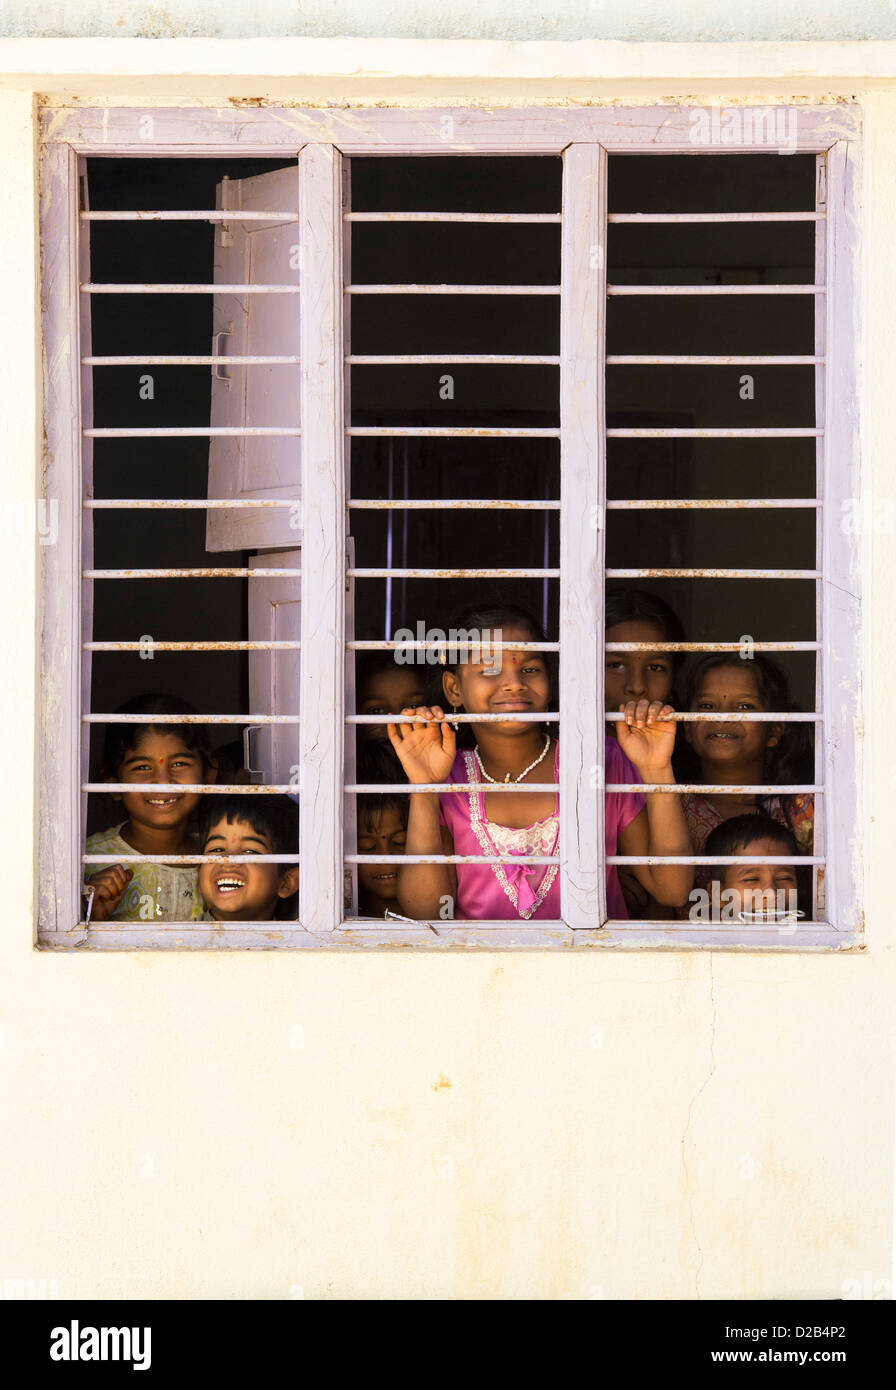 Les jeunes enfants du village indien à la fenêtre à travers les barreaux d'une maison indienne. L'Andhra Pradesh, Inde Banque D'Images